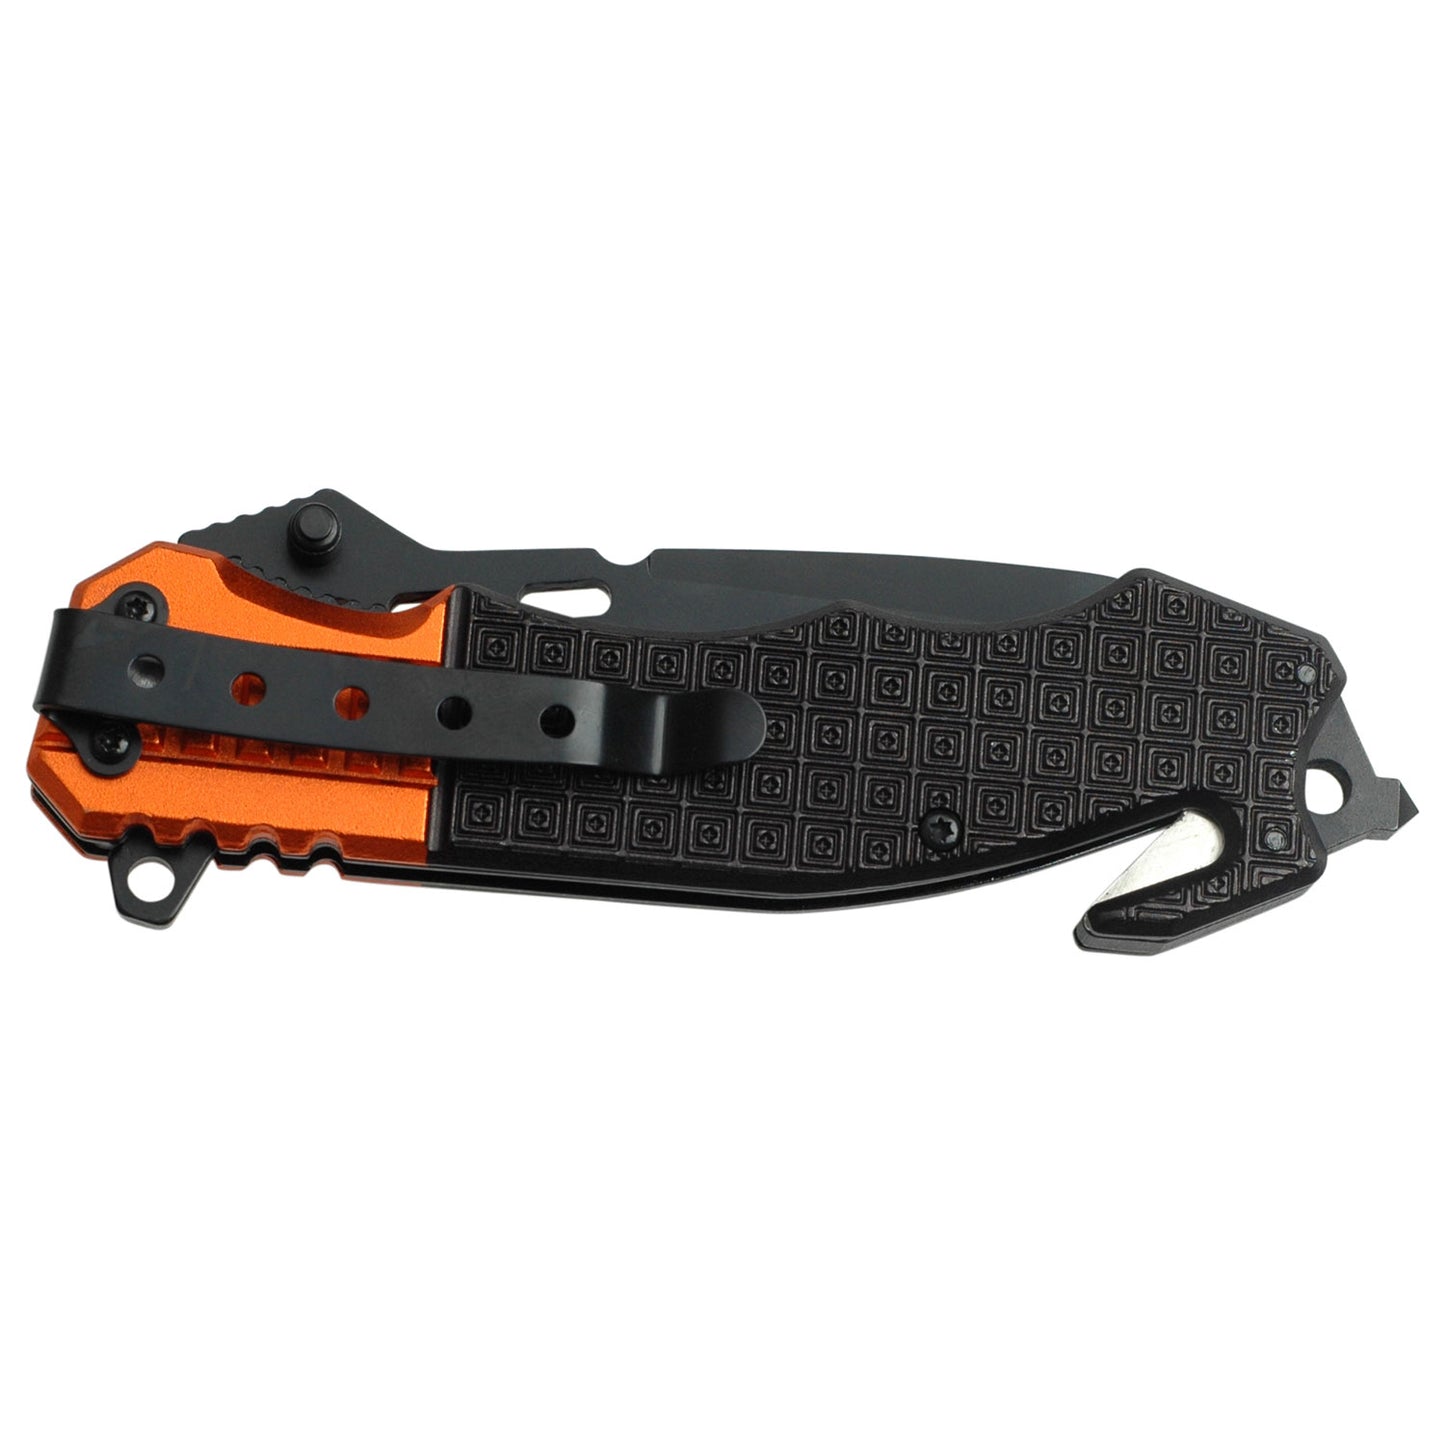 Black & Orange Textured EMT Rescue Knife